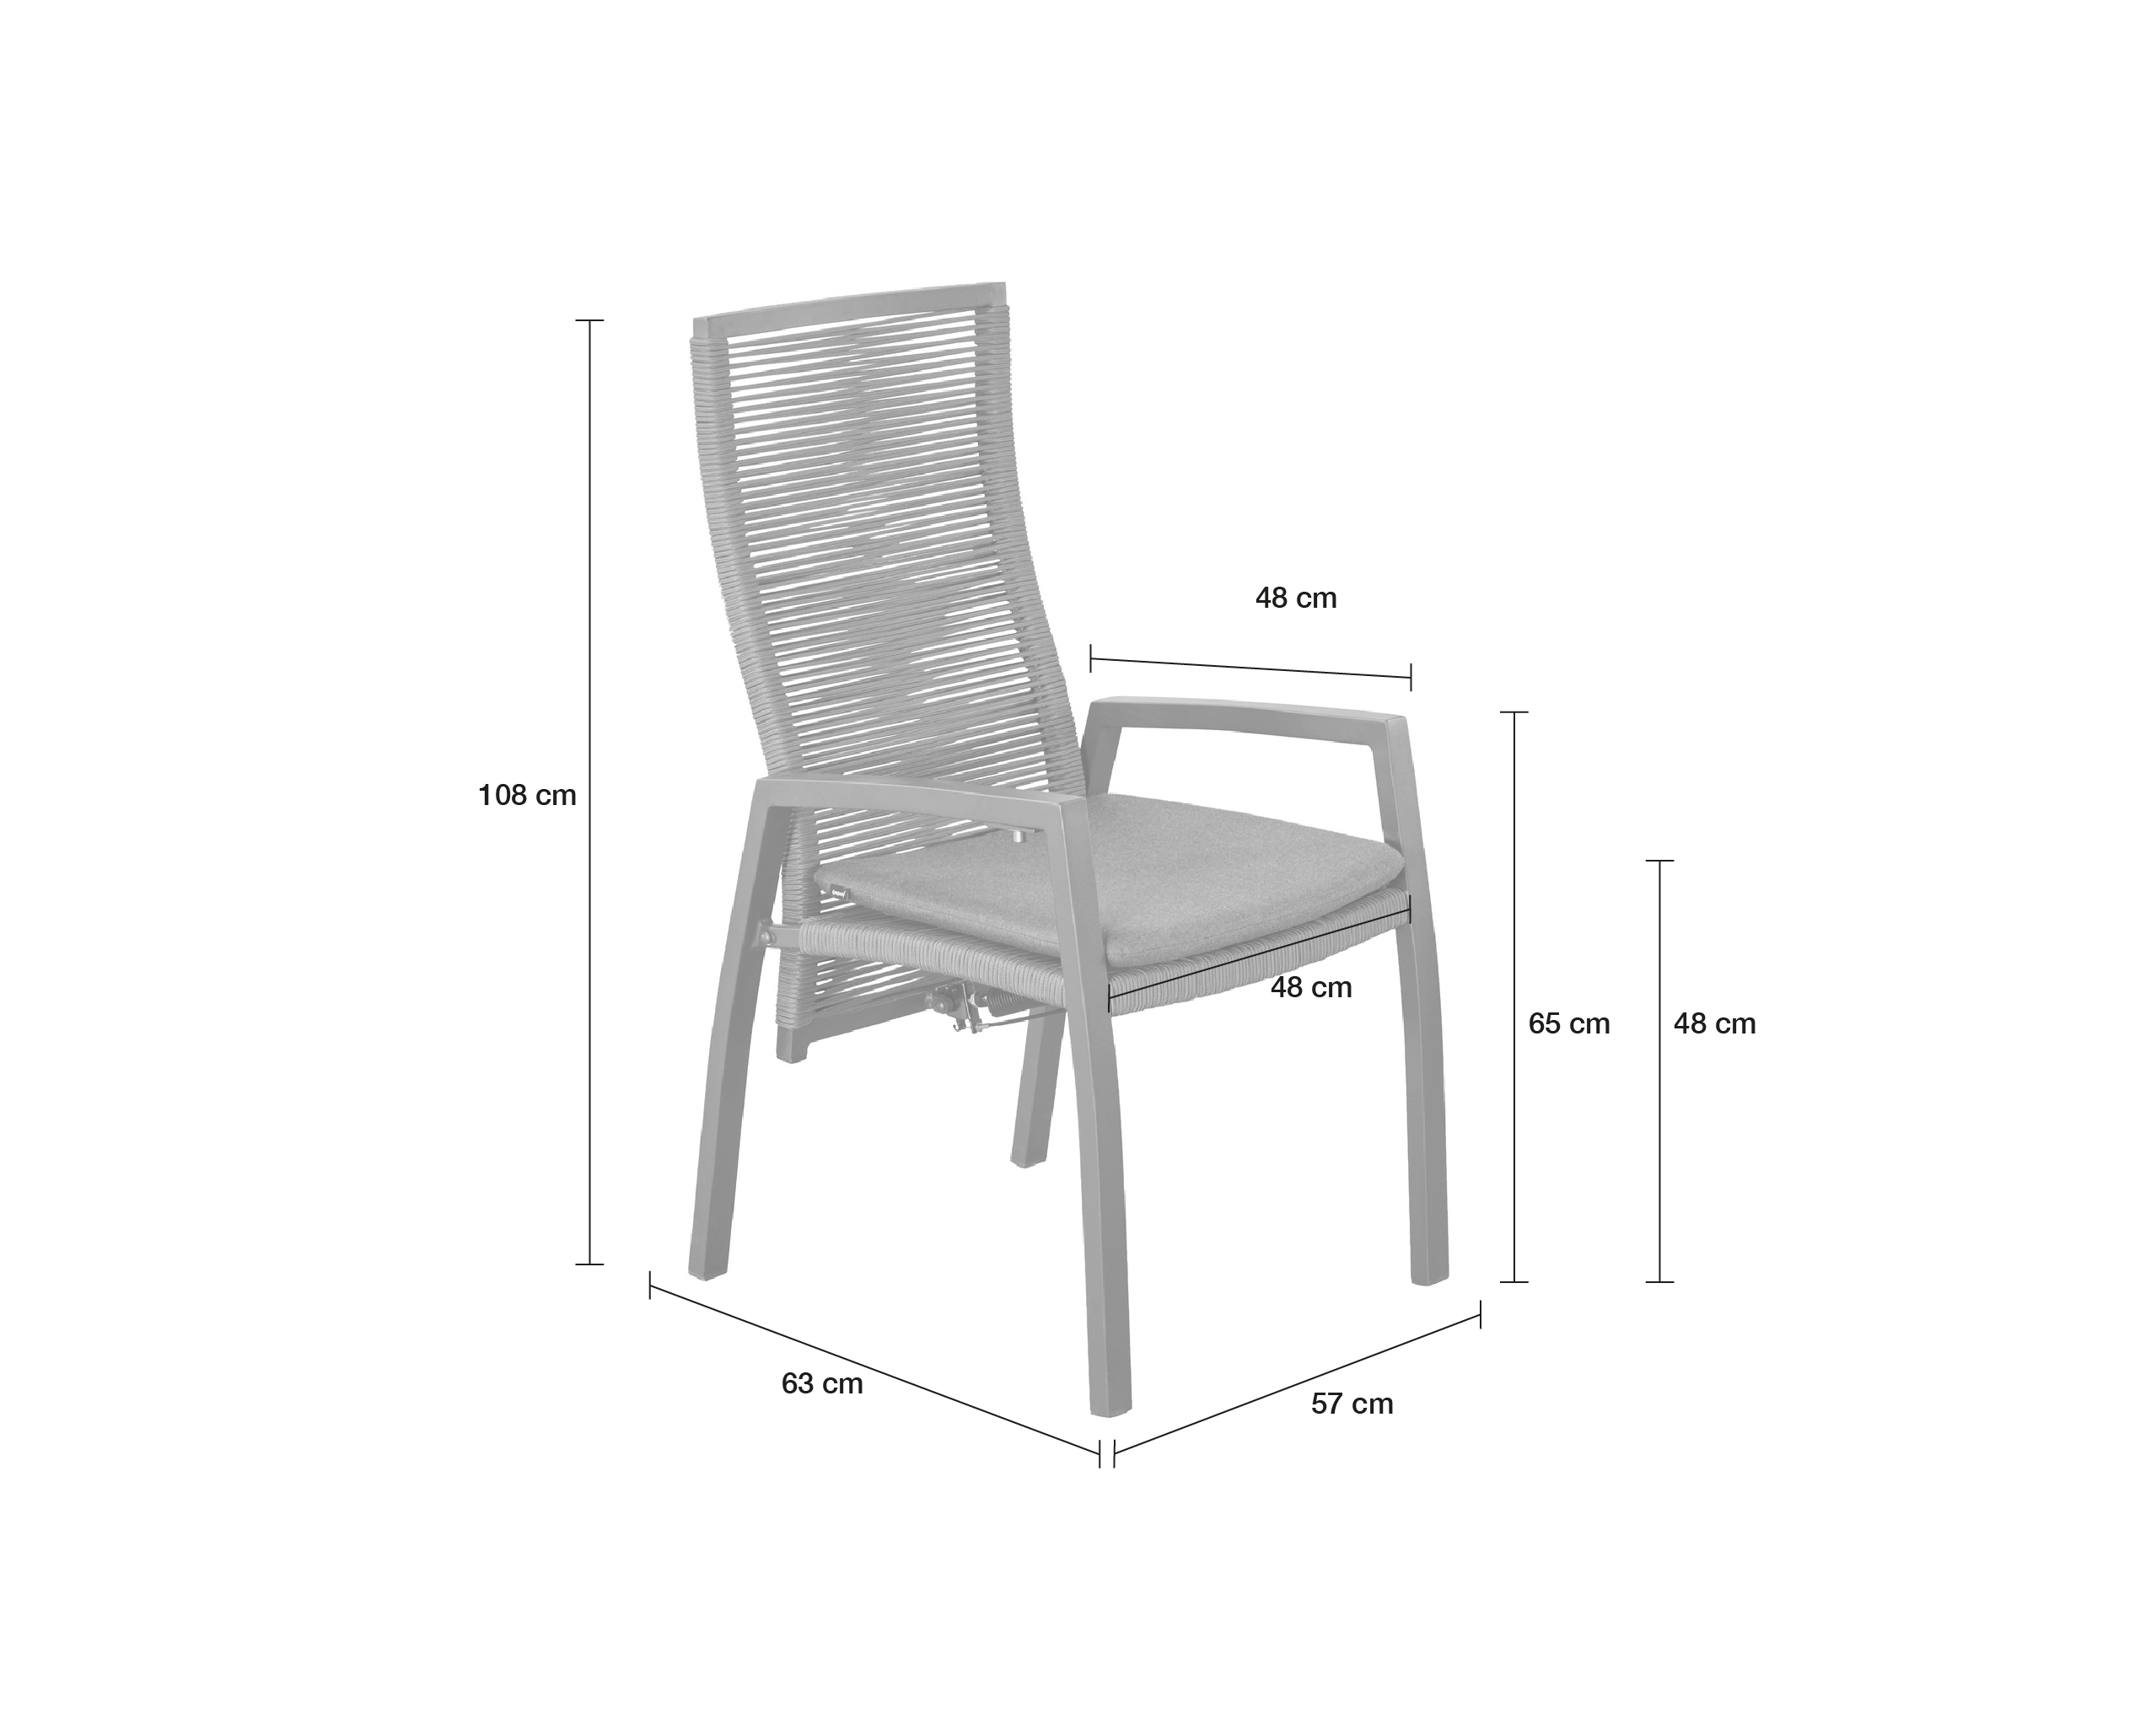 LC Garden 2er Set »Diwo« Gartenstuhl anthrazit/grau Aluminium/Rope Positionsstuhl mit Sitzkissen aus Sunbrella® Stoff